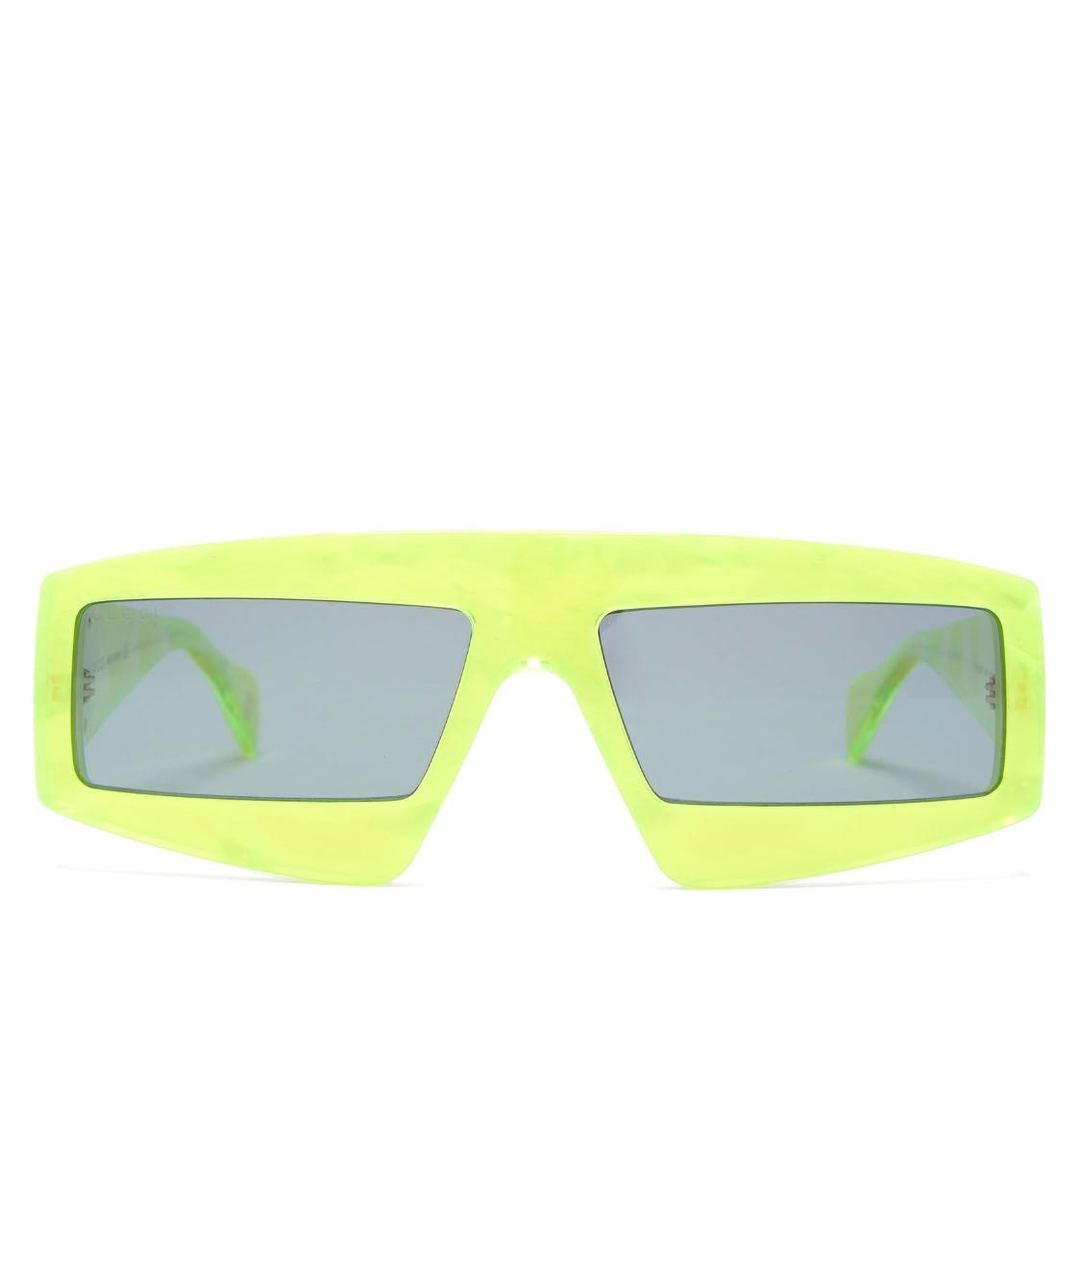 GUCCI Салатовые пластиковые солнцезащитные очки, фото 1